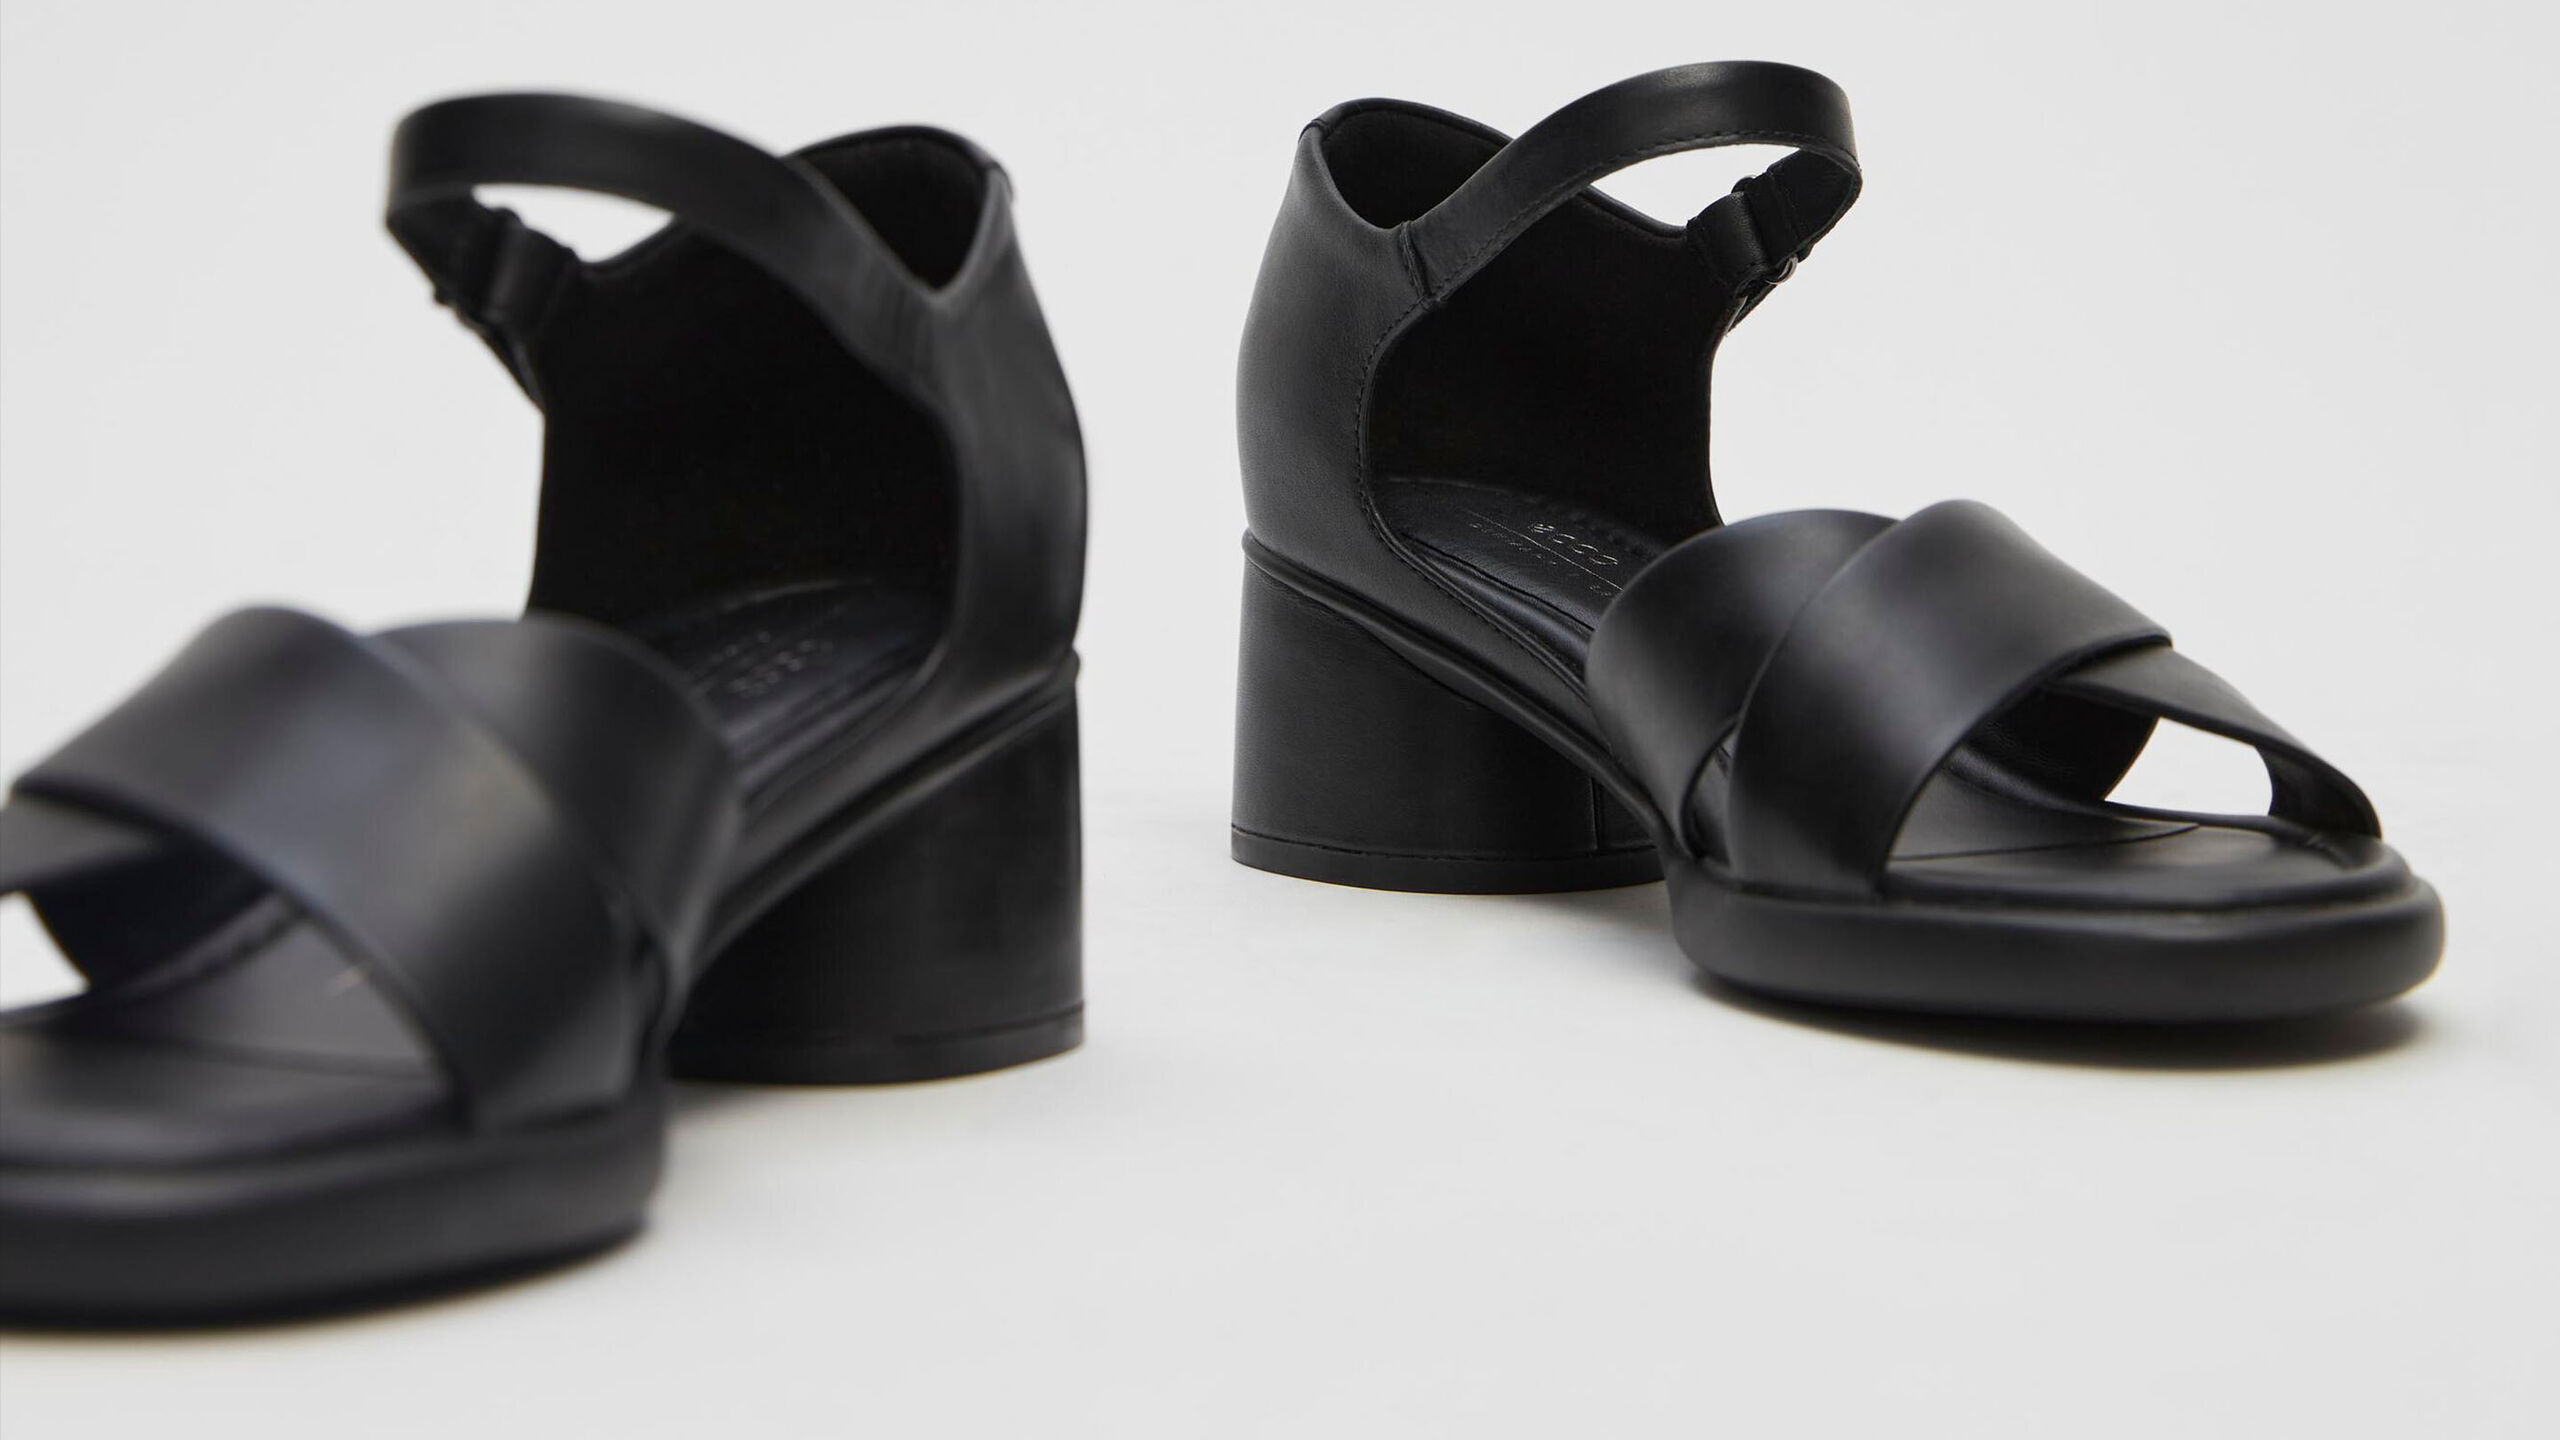 Black dress sandals with heel